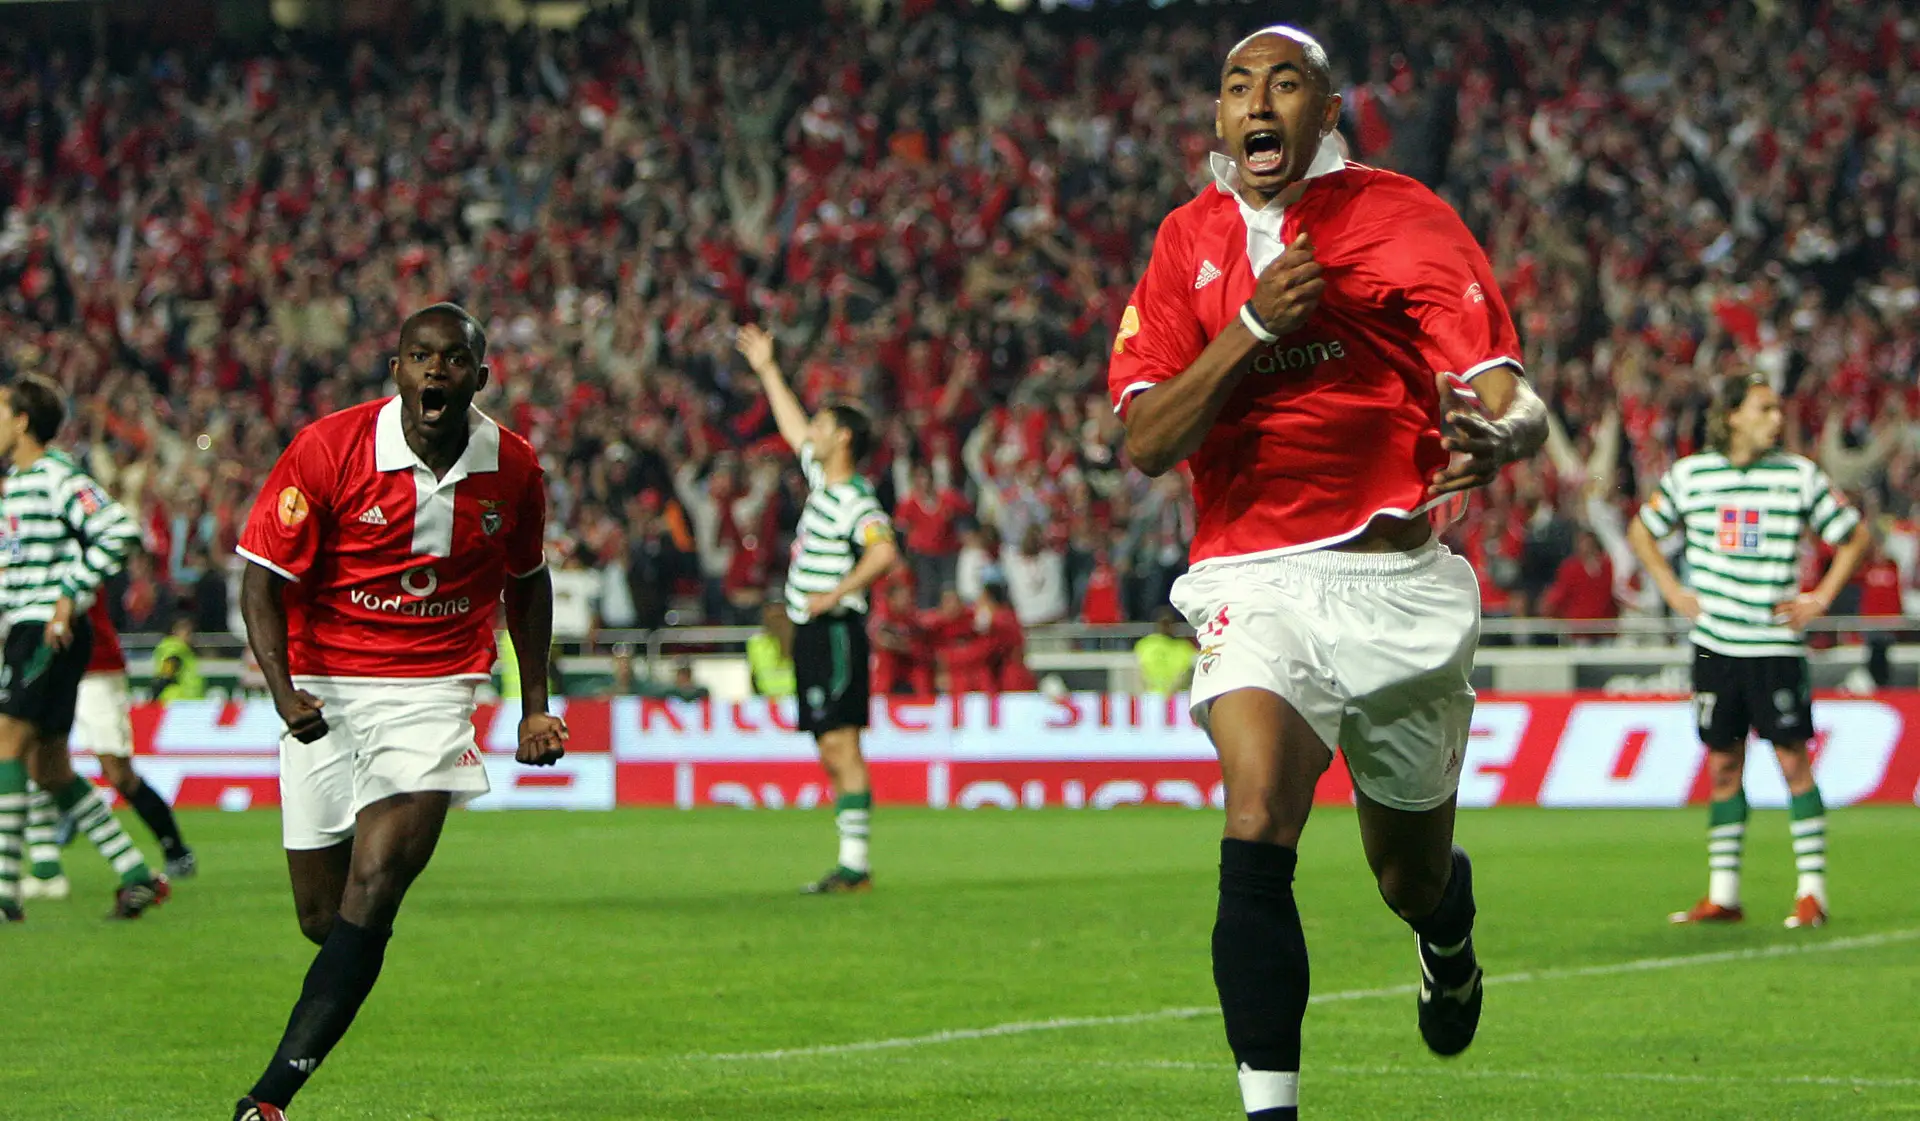 Luisão e aquele golo no Benfica-Sporting: «Até hoje quando saio à